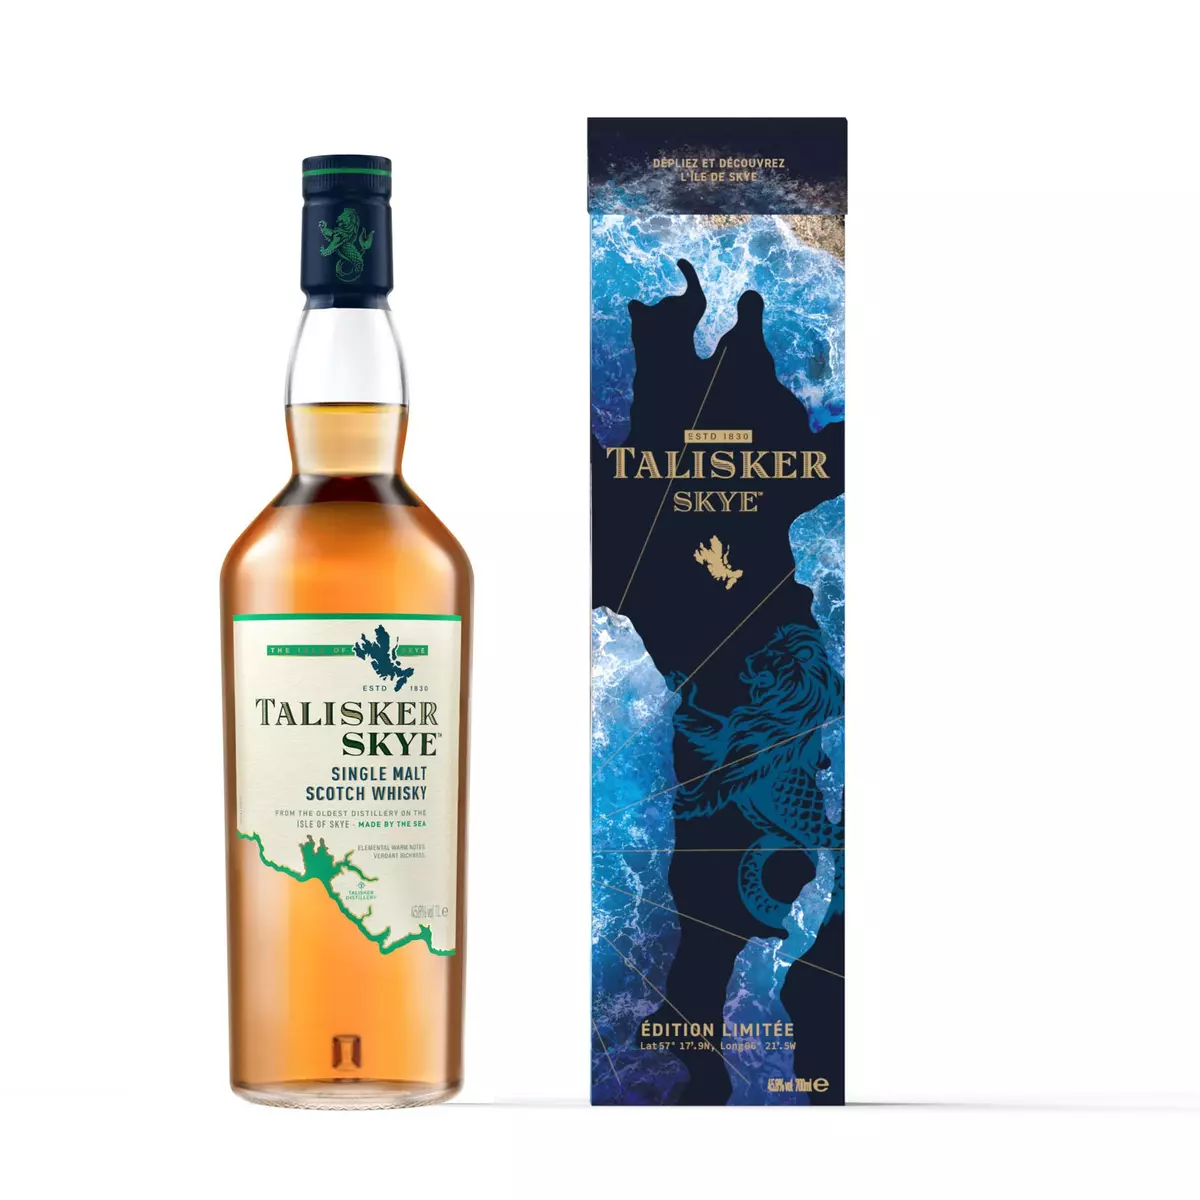 TALISKER Scotch whisky Skye single malt 45.8% 70cl